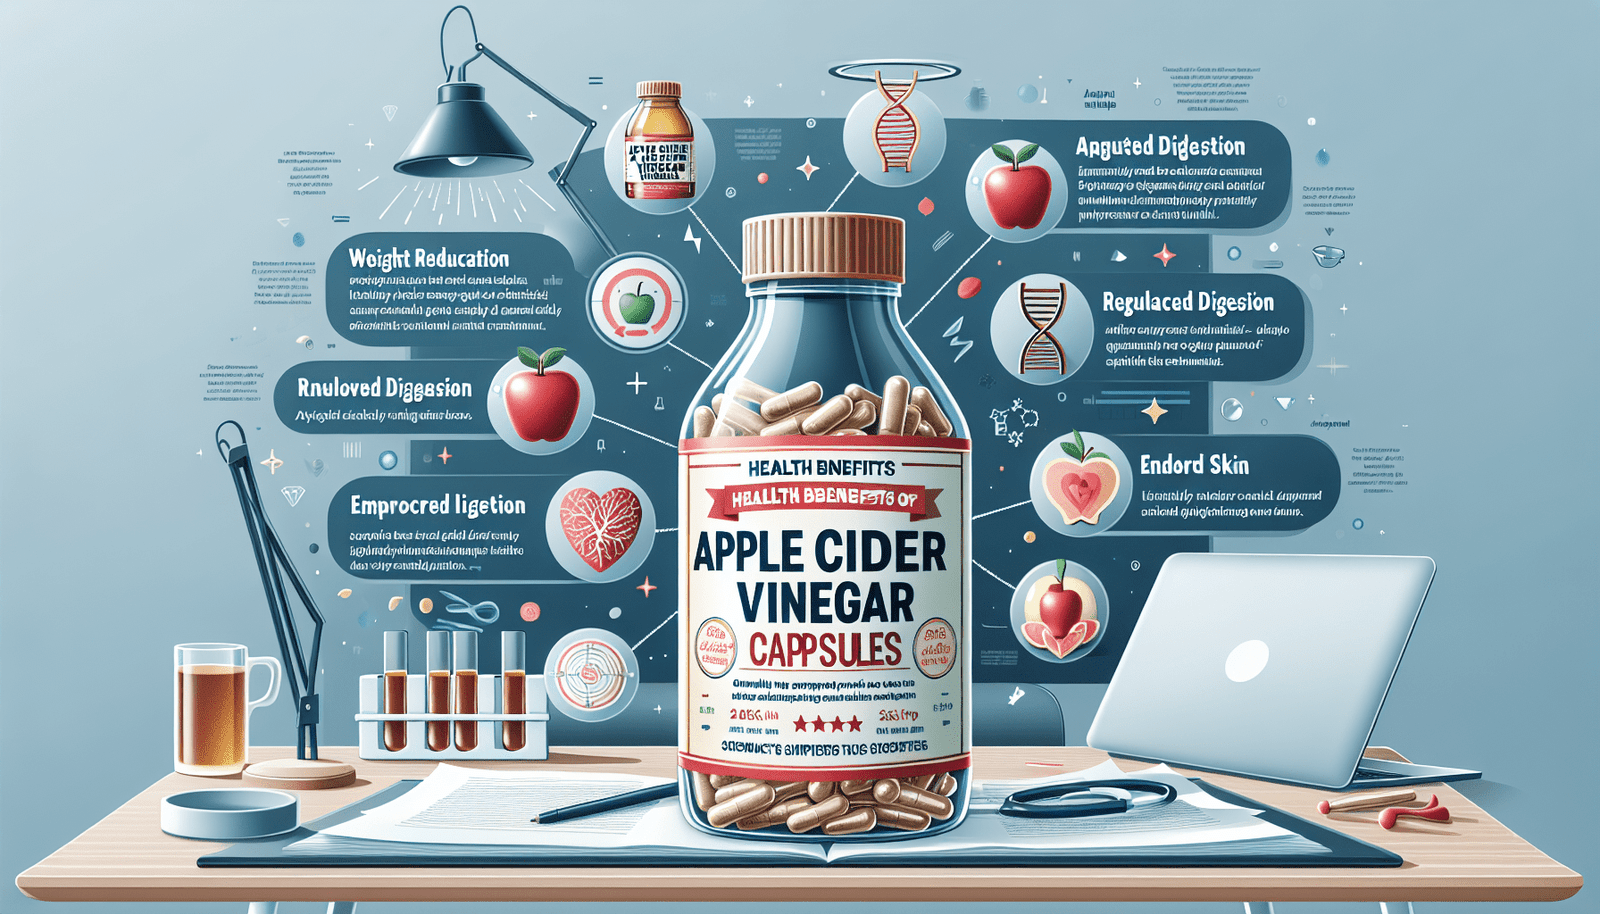 The Amazing Benefits of Apple Cider Vinegar Capsules